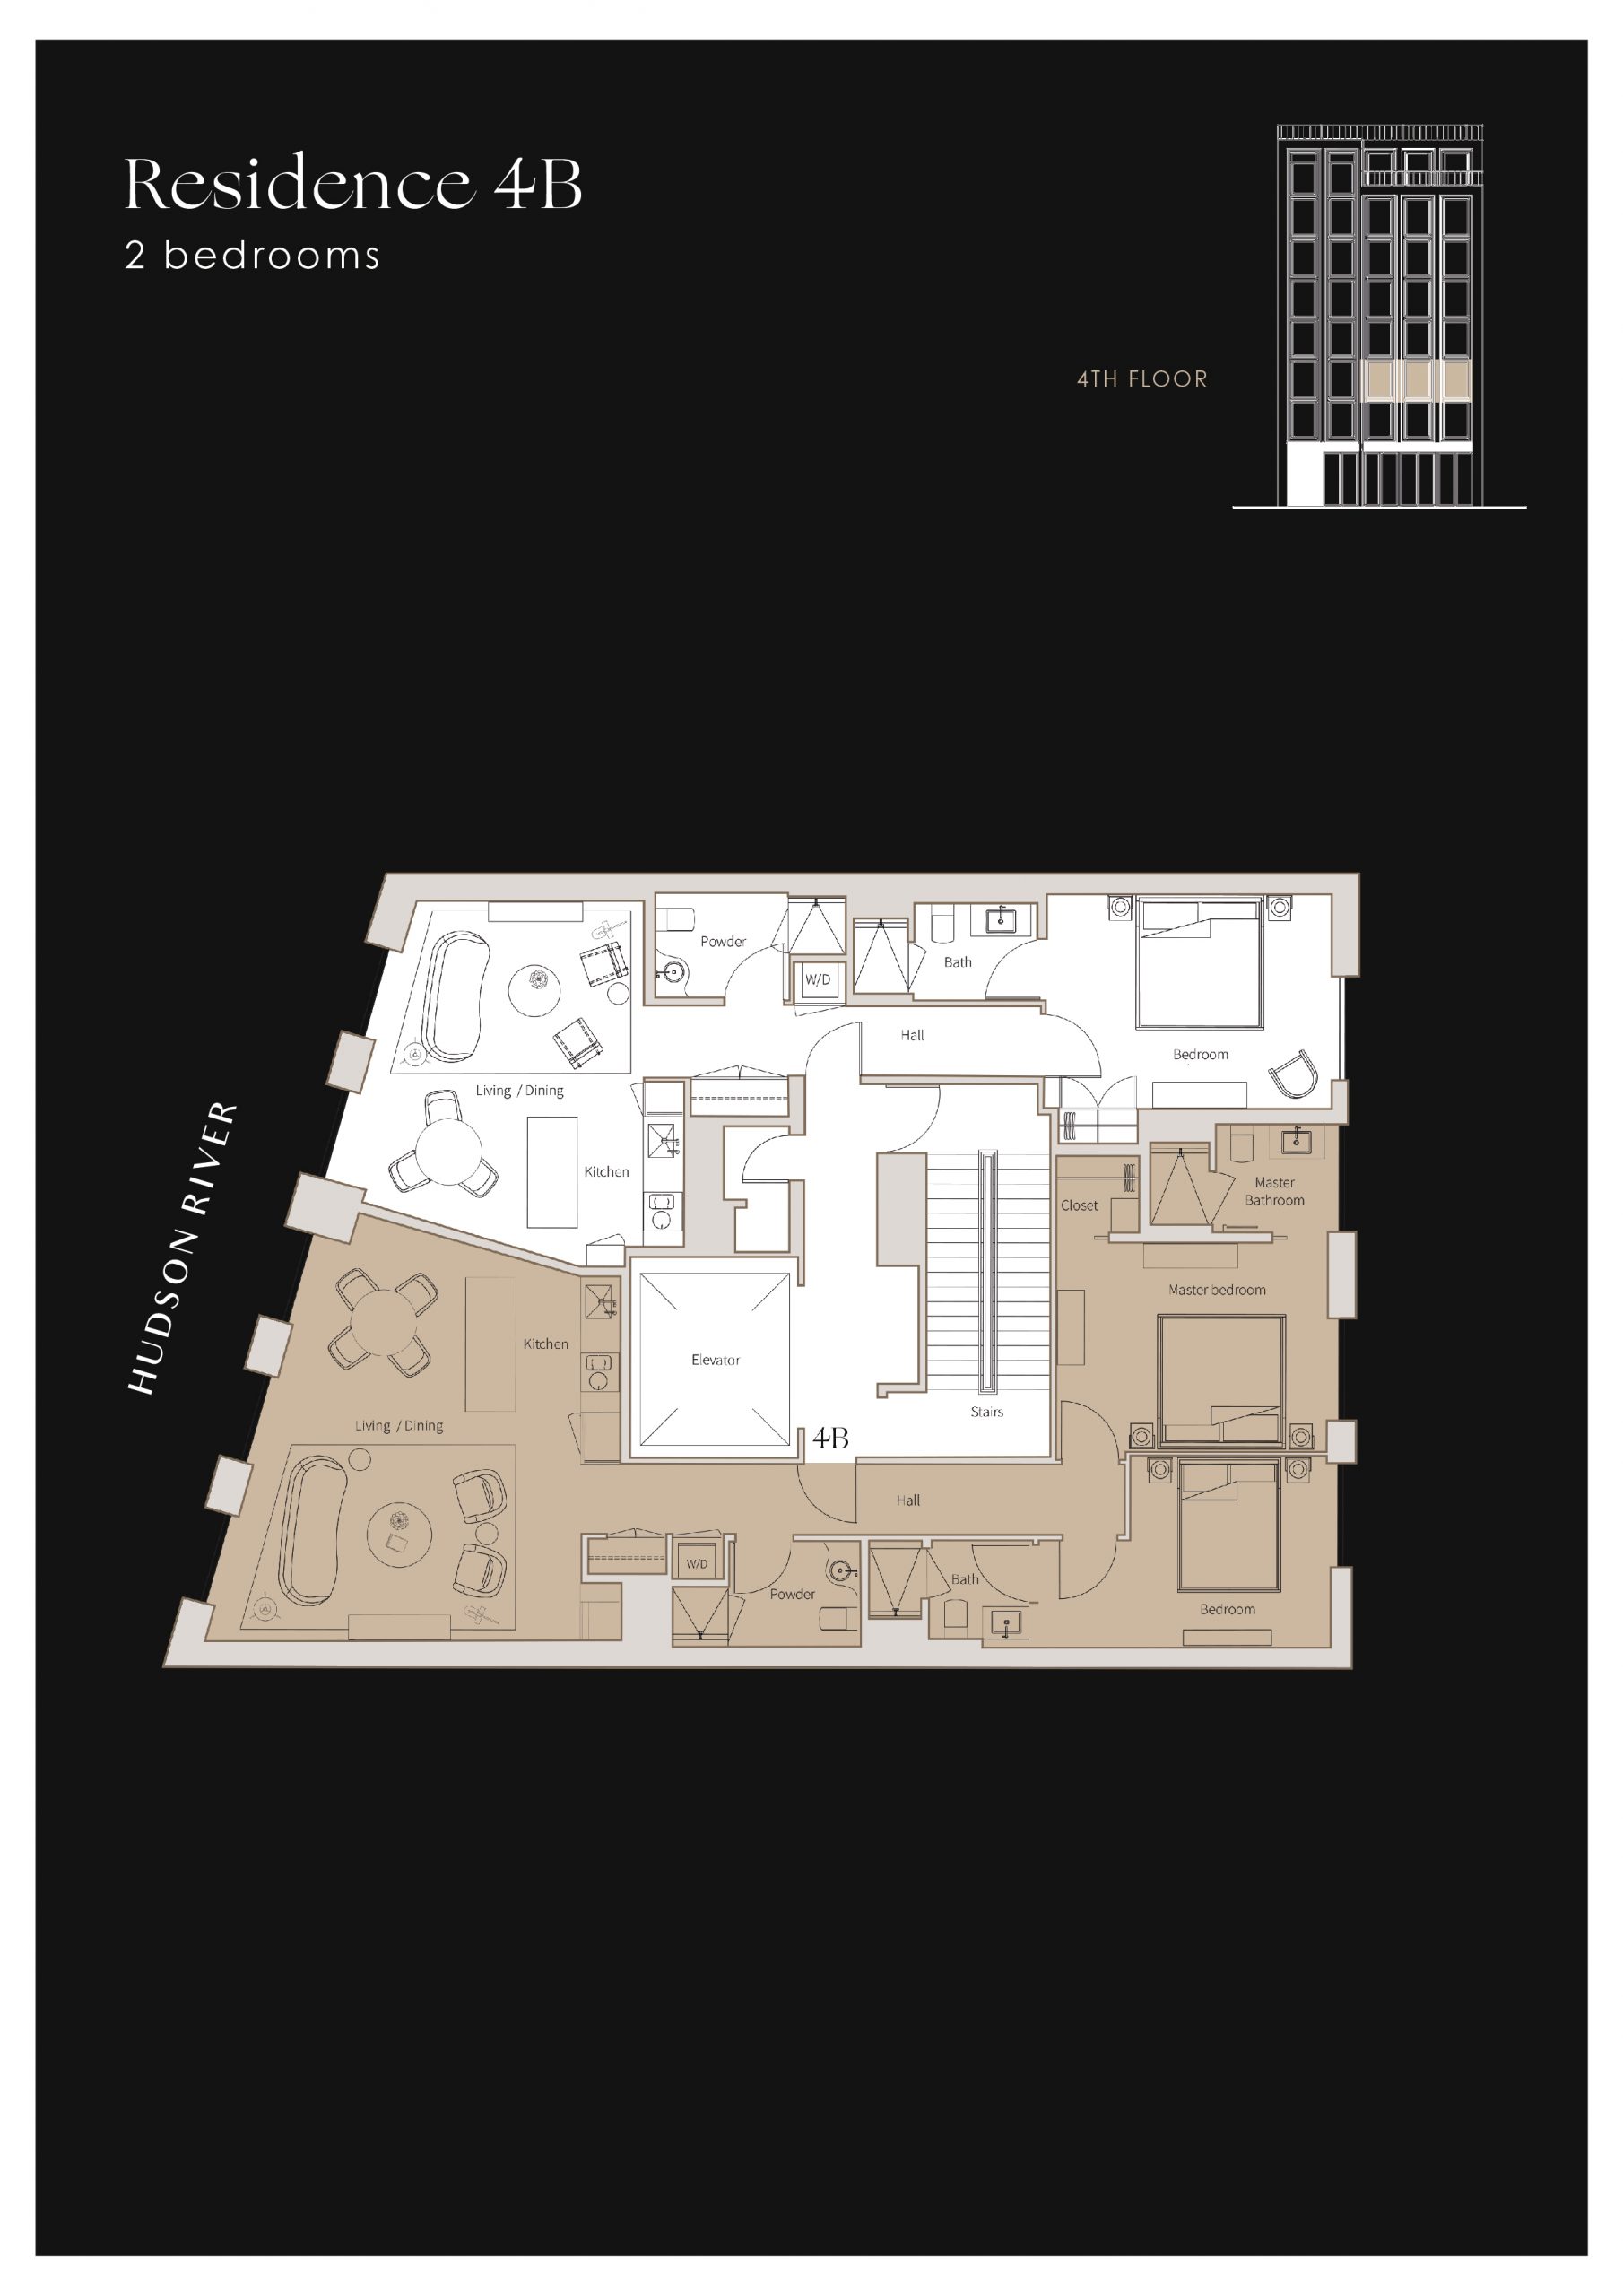 Plan of apartment Residence 4B